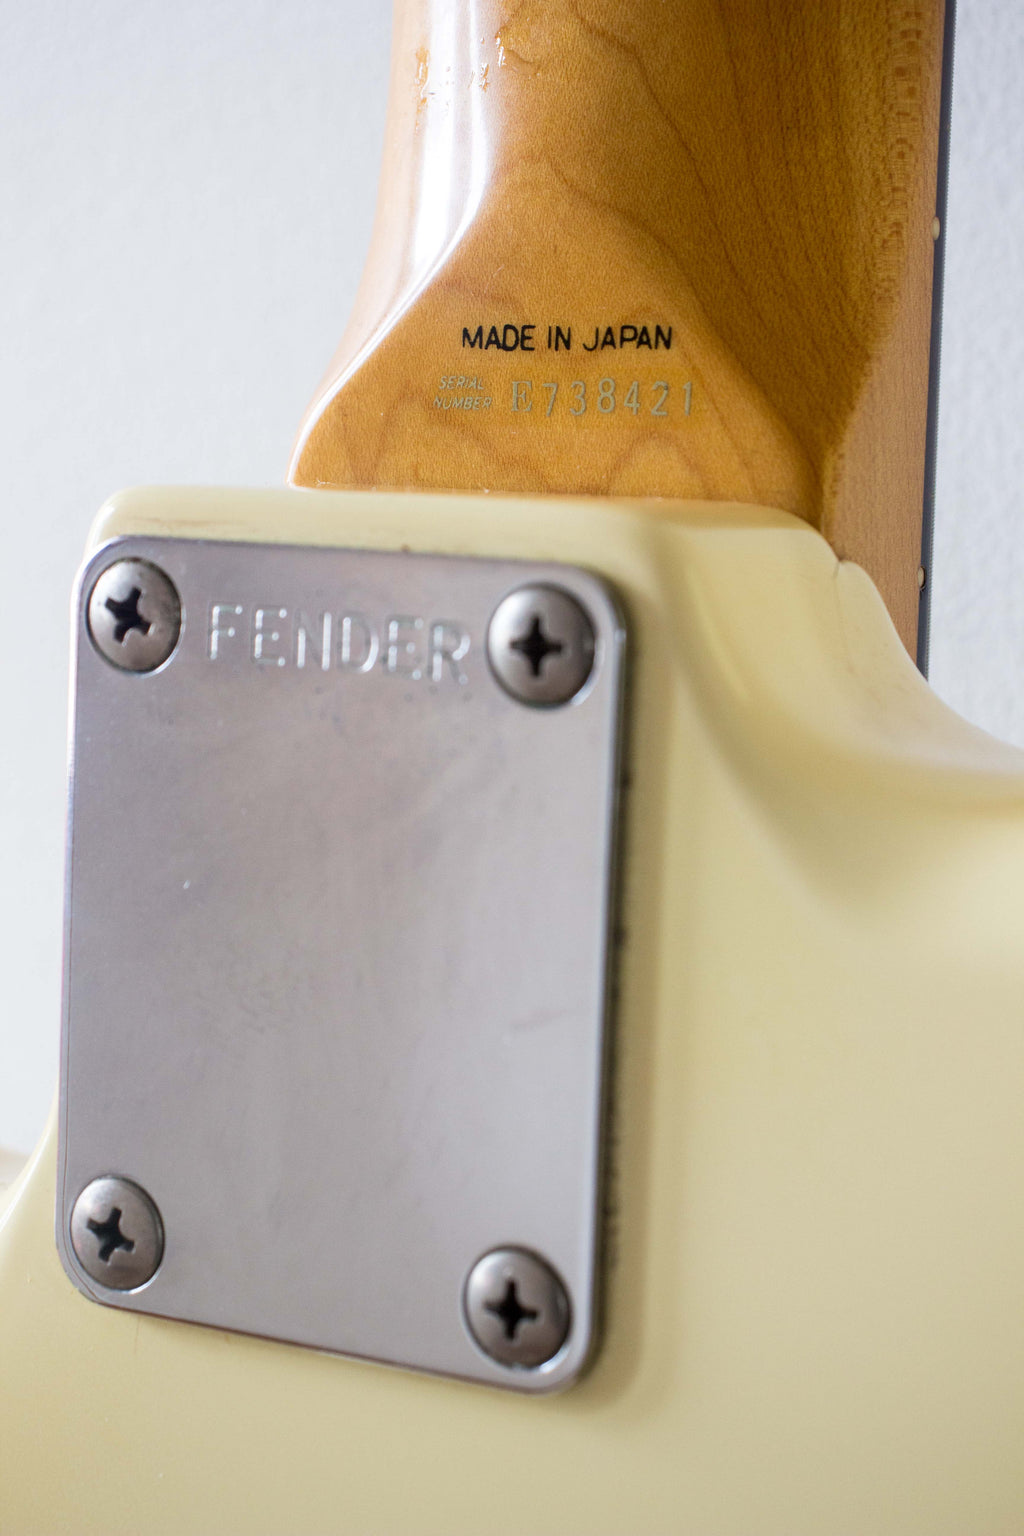 Fender Japan '62 Stratocaster ST62-55 Vintage White 1986